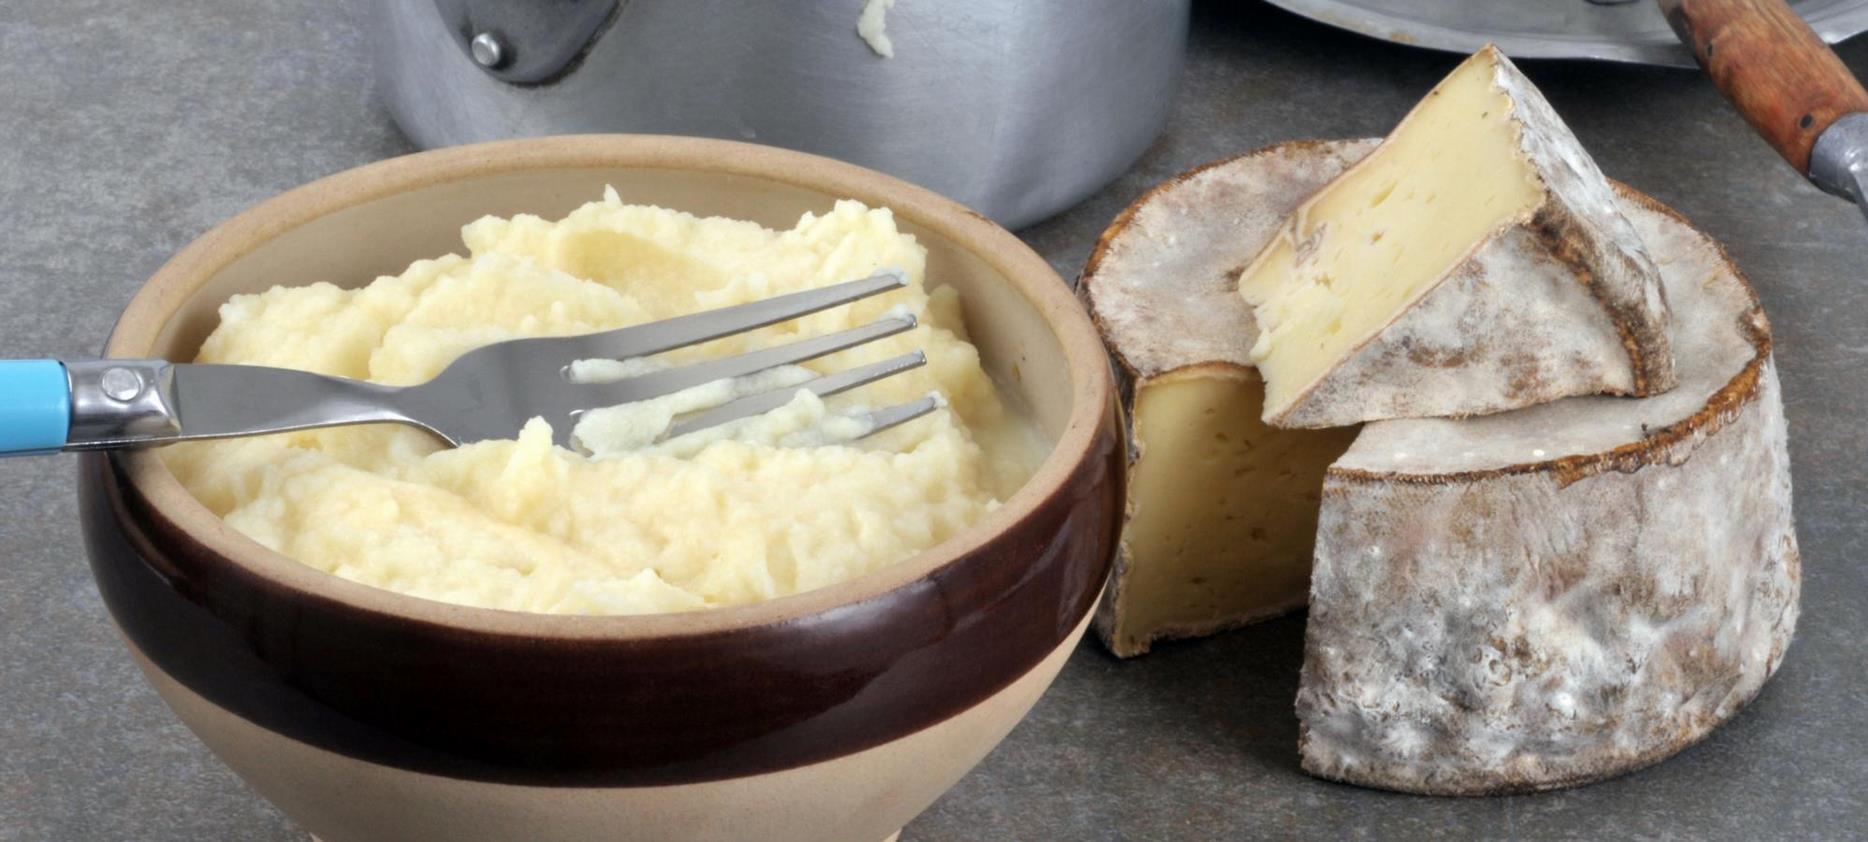 La Truffade plat a base de Pomme de terre et fromage